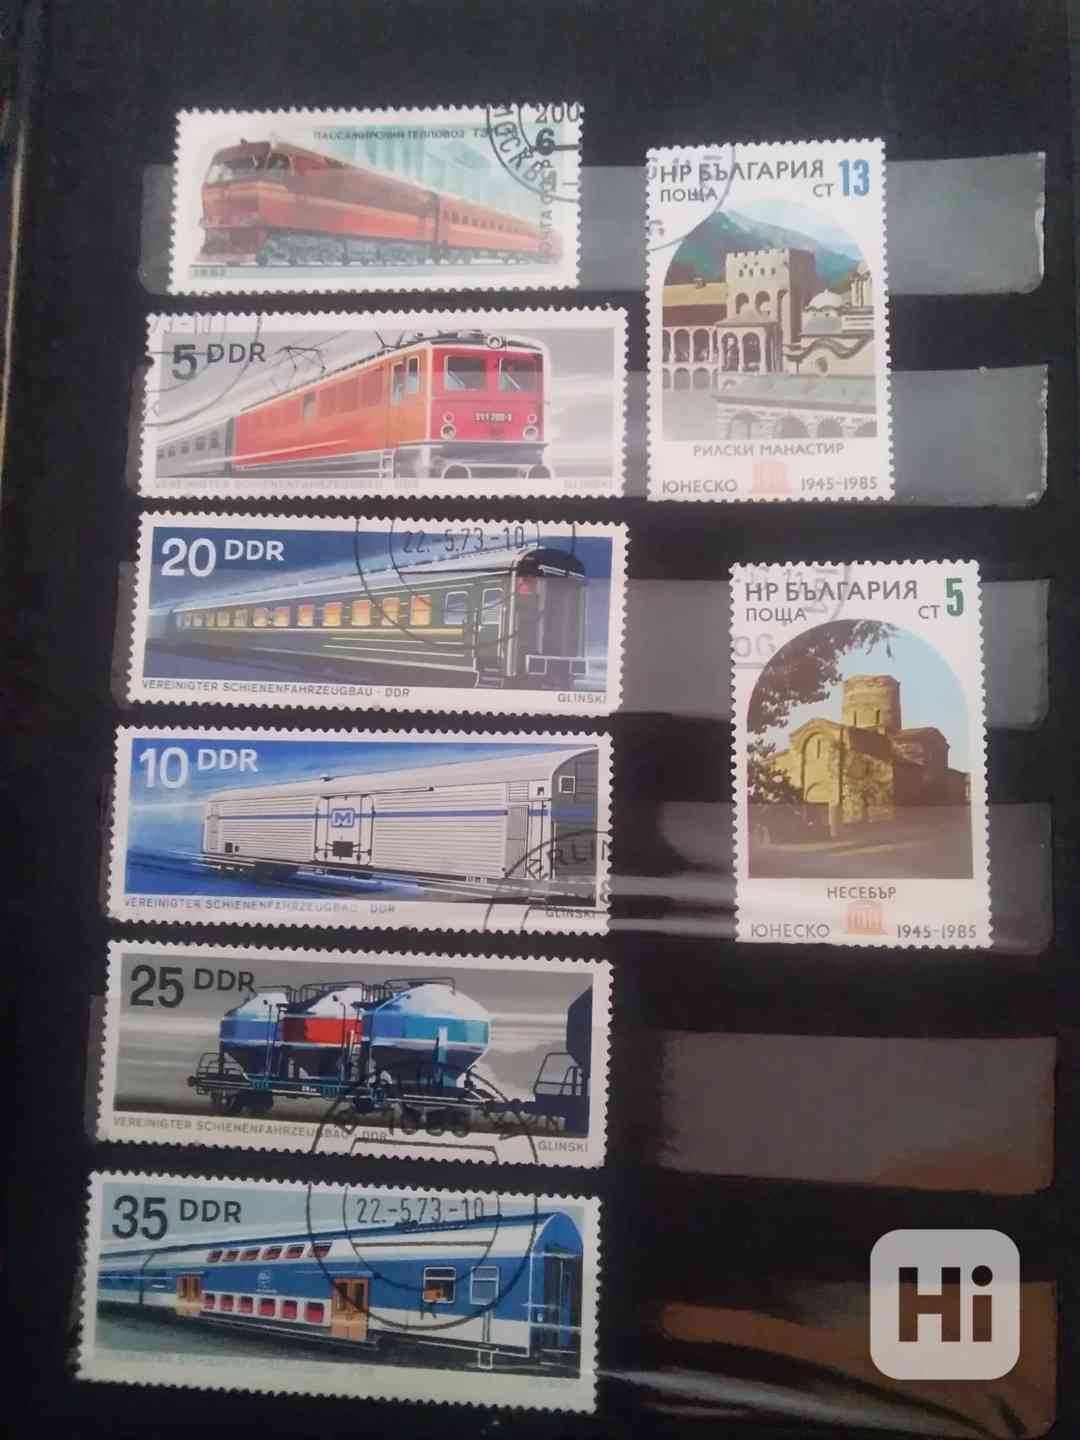 Poštovní známky, staré  - foto 1